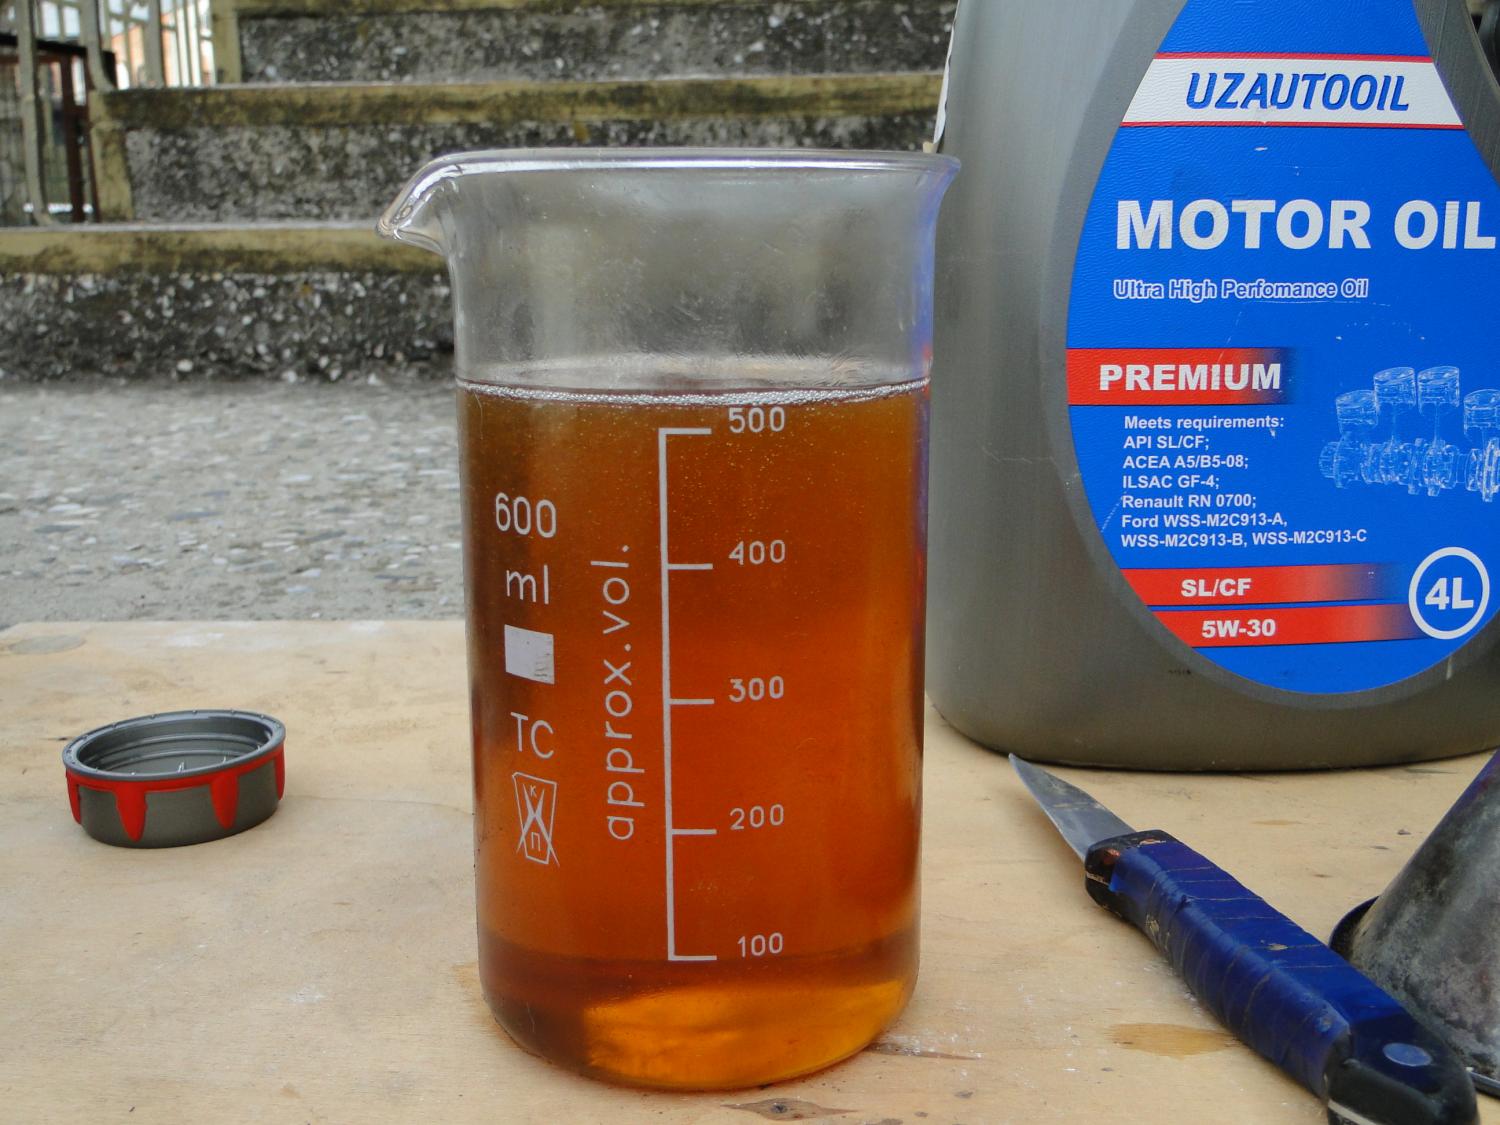 Топливо вода масло. Литр моторного масла. 100 Грамм моторного масла. Емкость для трансмиссионного масла. Мерка для масла моторного масла.